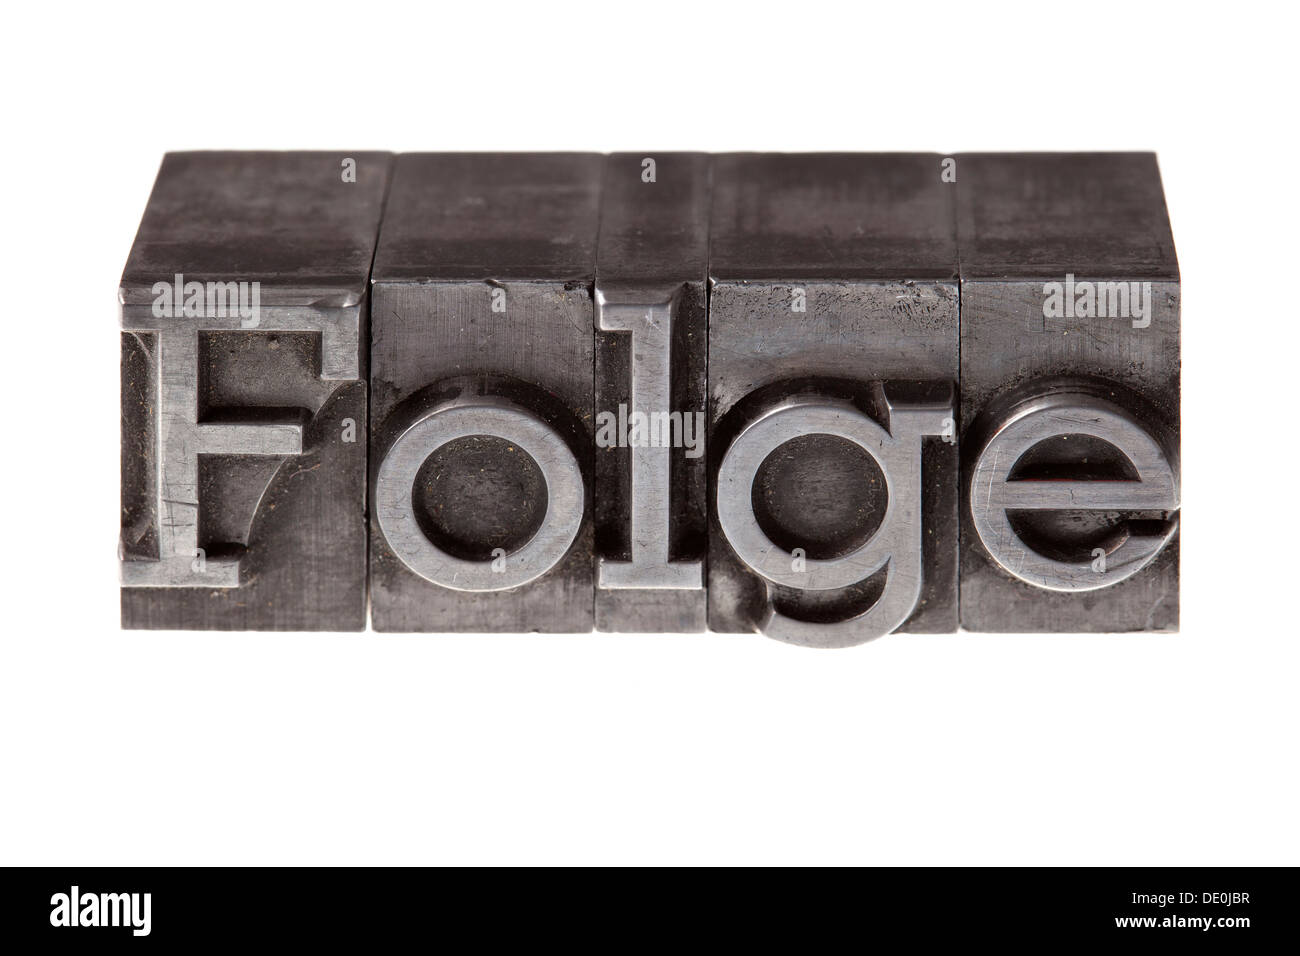 Vecchio portano lettere che compongono la parola "Folge', tedesco per "conseguenza" Foto Stock